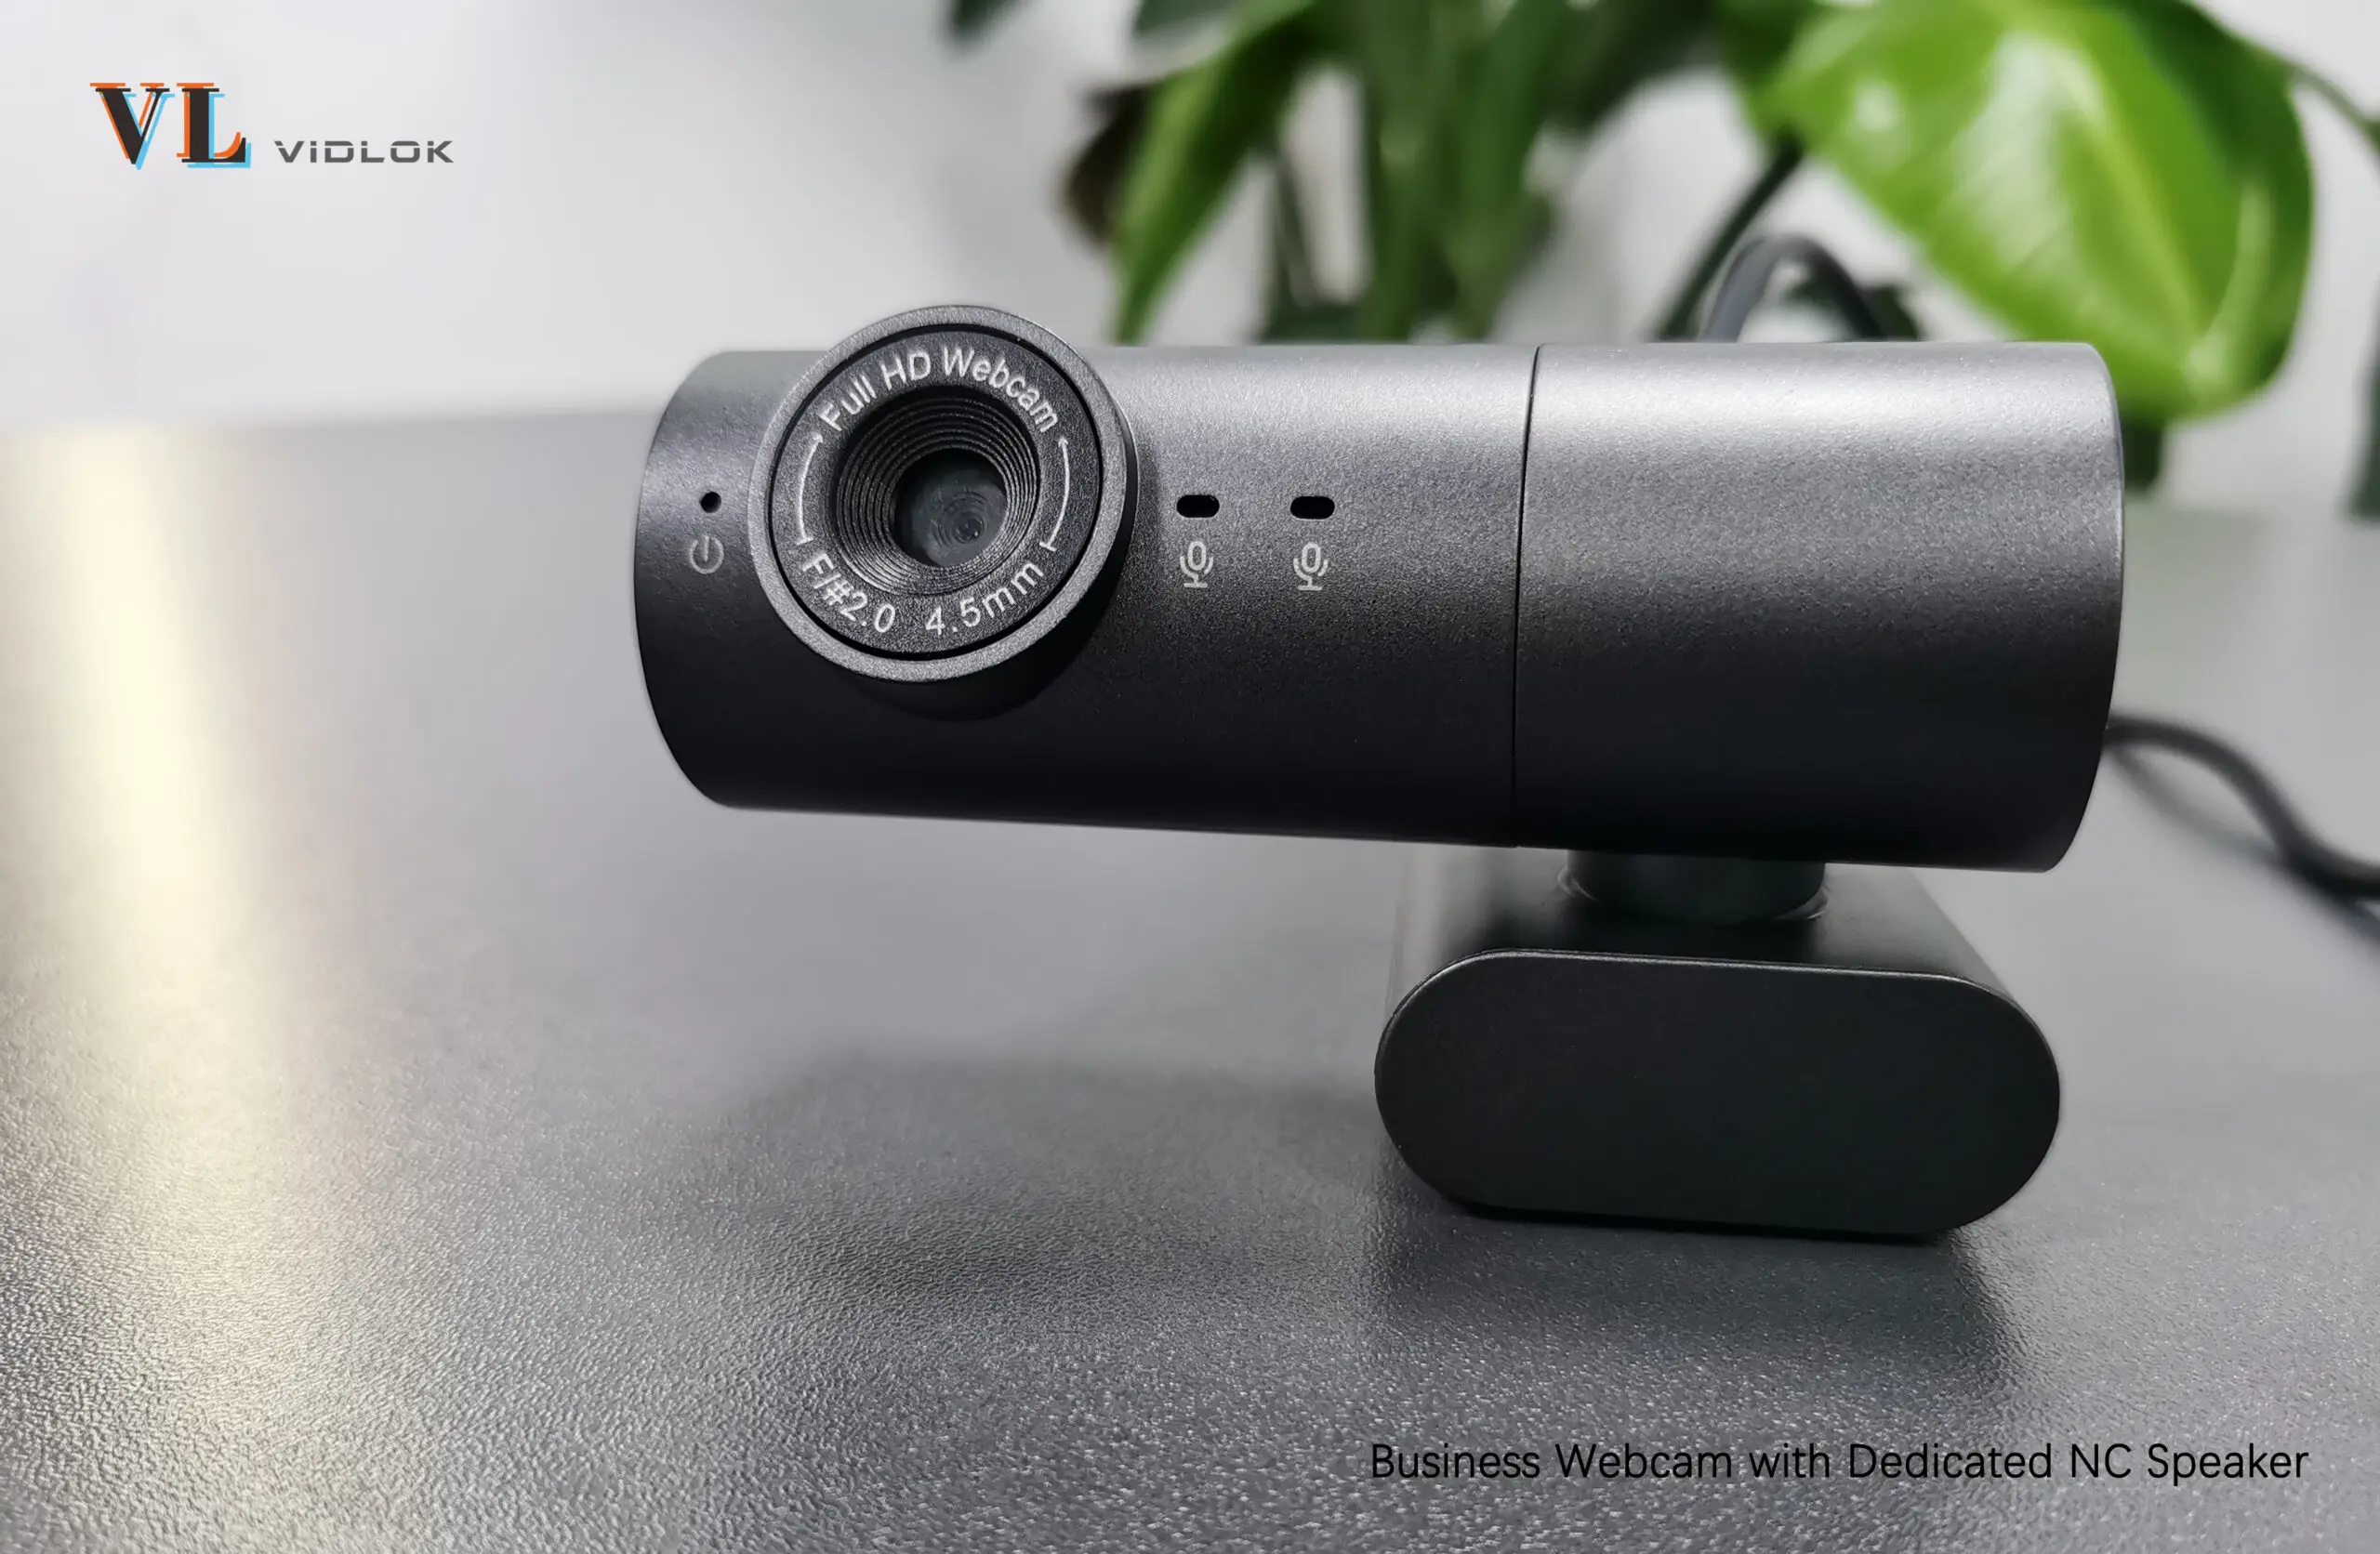 Haz videoconferencias profesionales con la Business Webcam W91 de Vidlok con altavoz dedicado